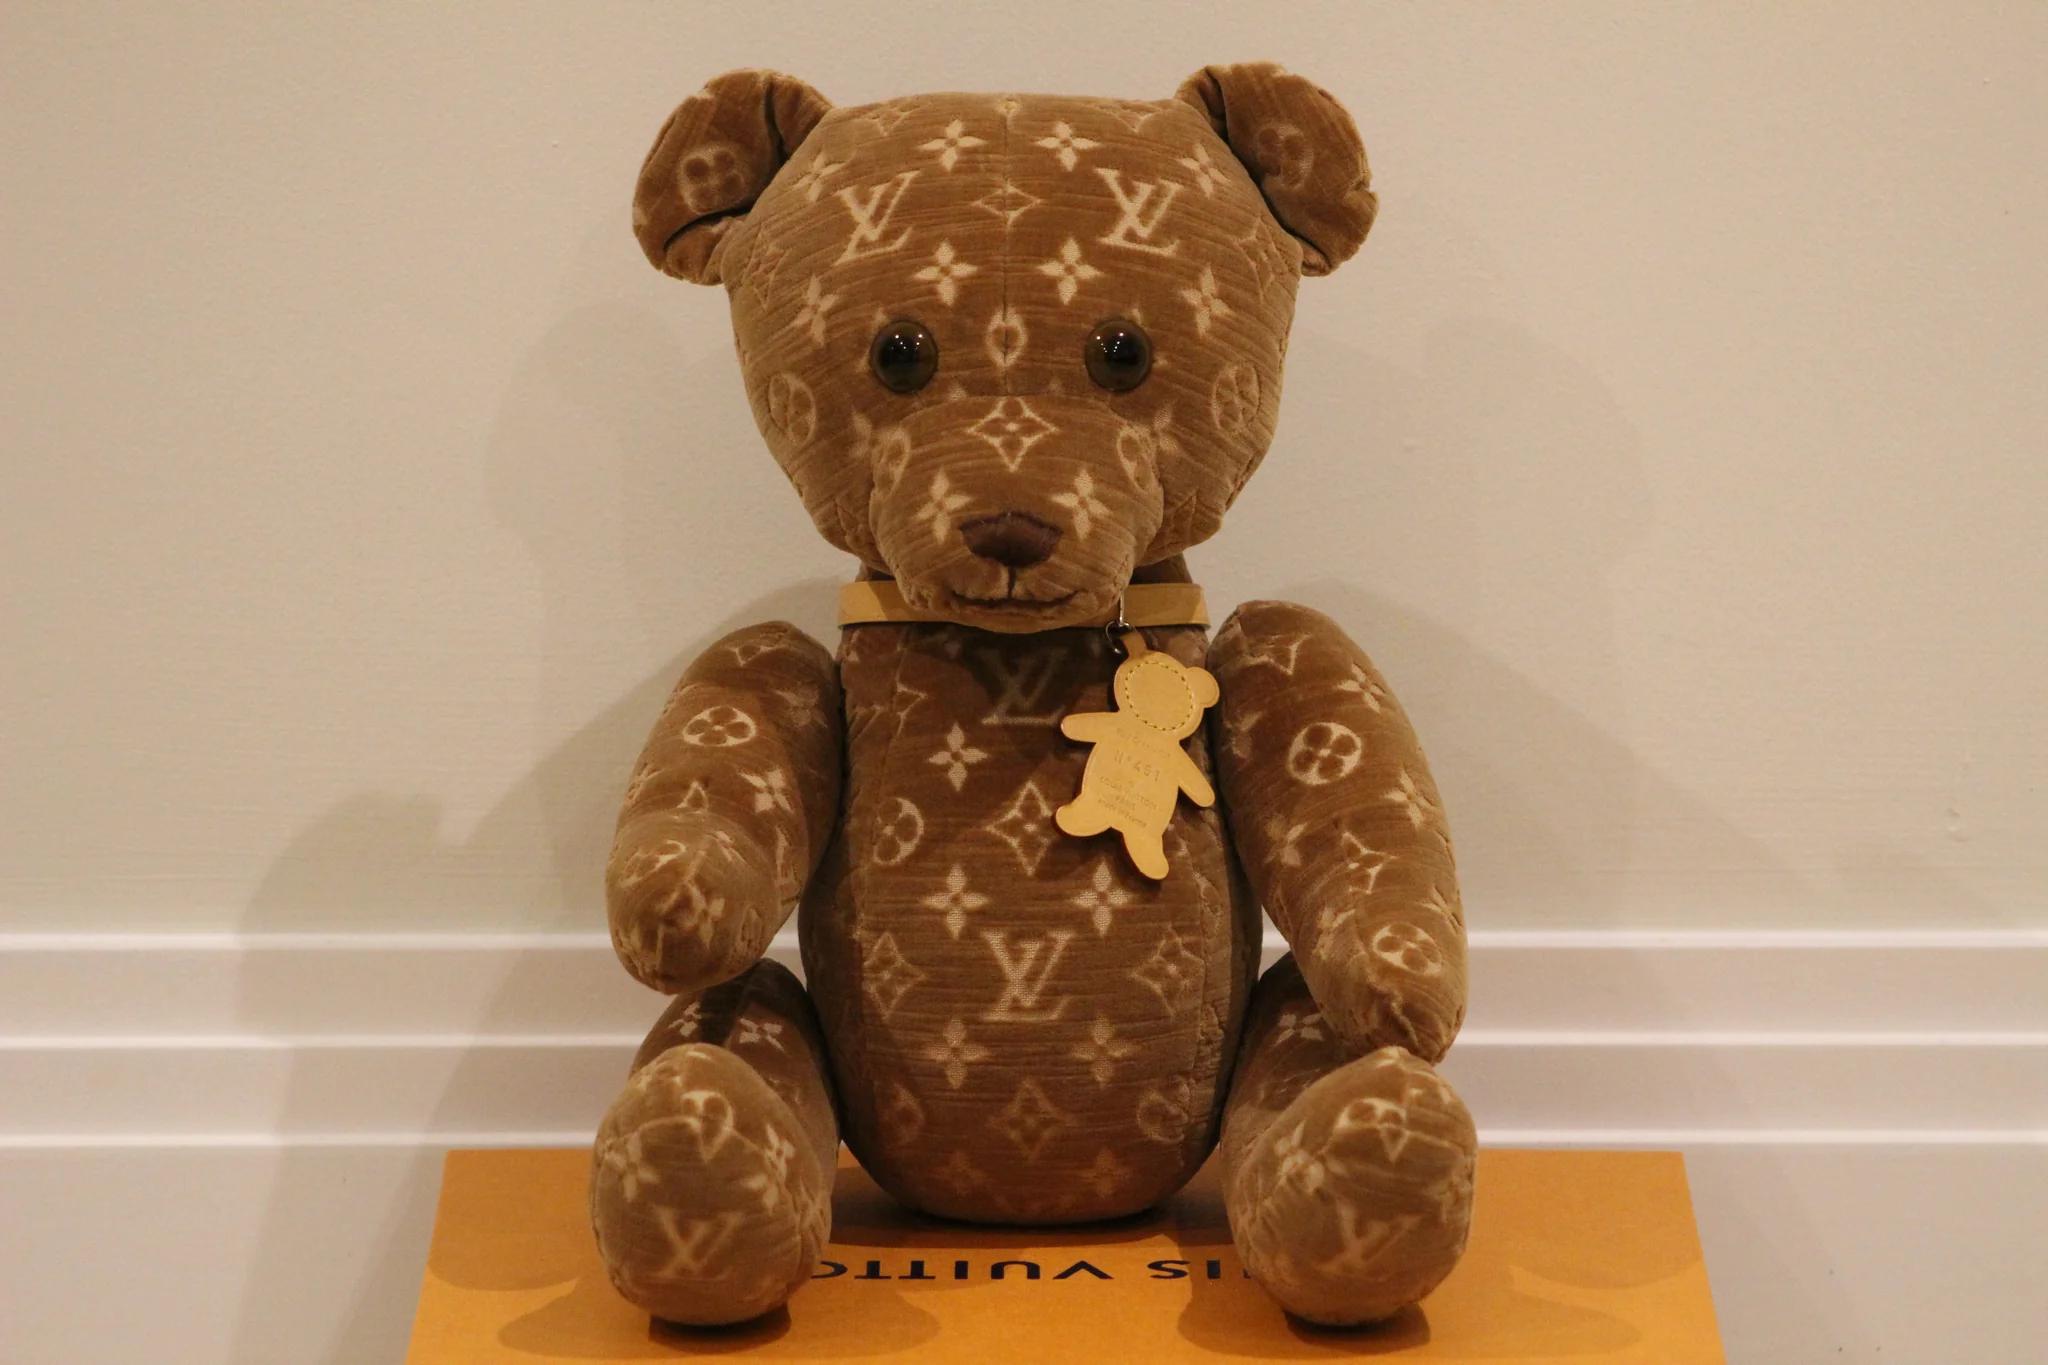 

Der Louis Vuitton Monogram Limited Edition VIP Doudou Teddybär 2005 ist eine harmonische Verschmelzung von Luxus, Exklusivität und zeitlosem Charme. Diese besondere Kreation stammt aus der geschätzten Herbst-/Winter-Laufstegkollektion 2004-2005